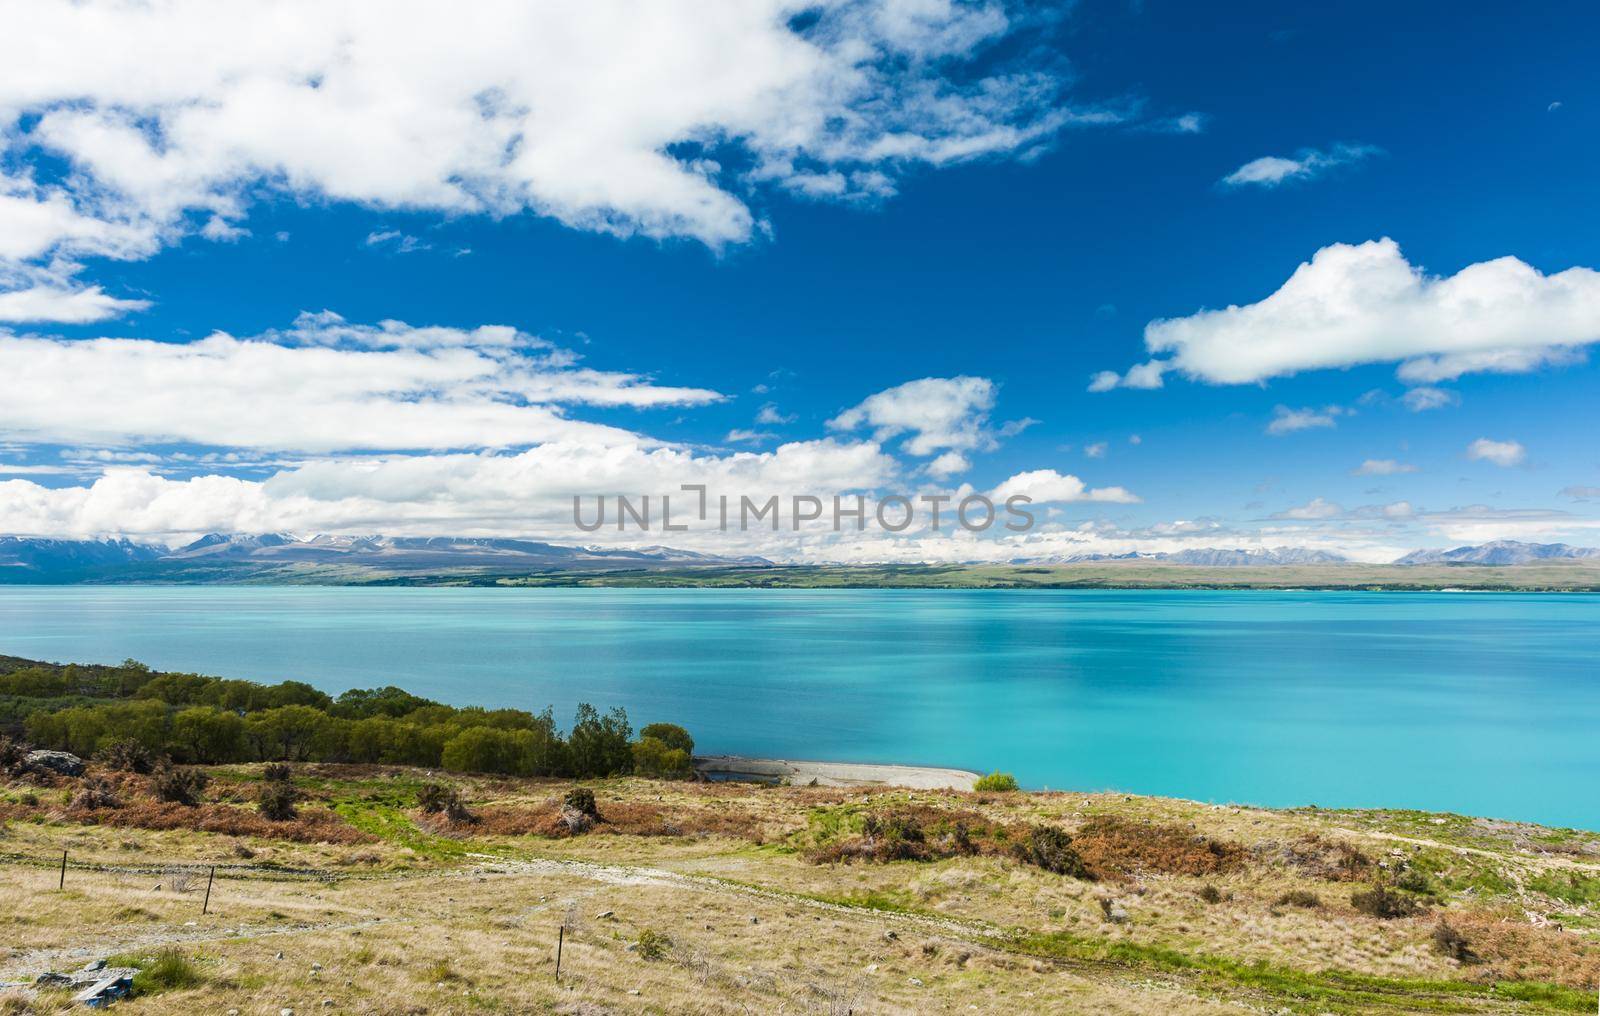 Beautiful incredibly blue lake Pukaki at New Zealand